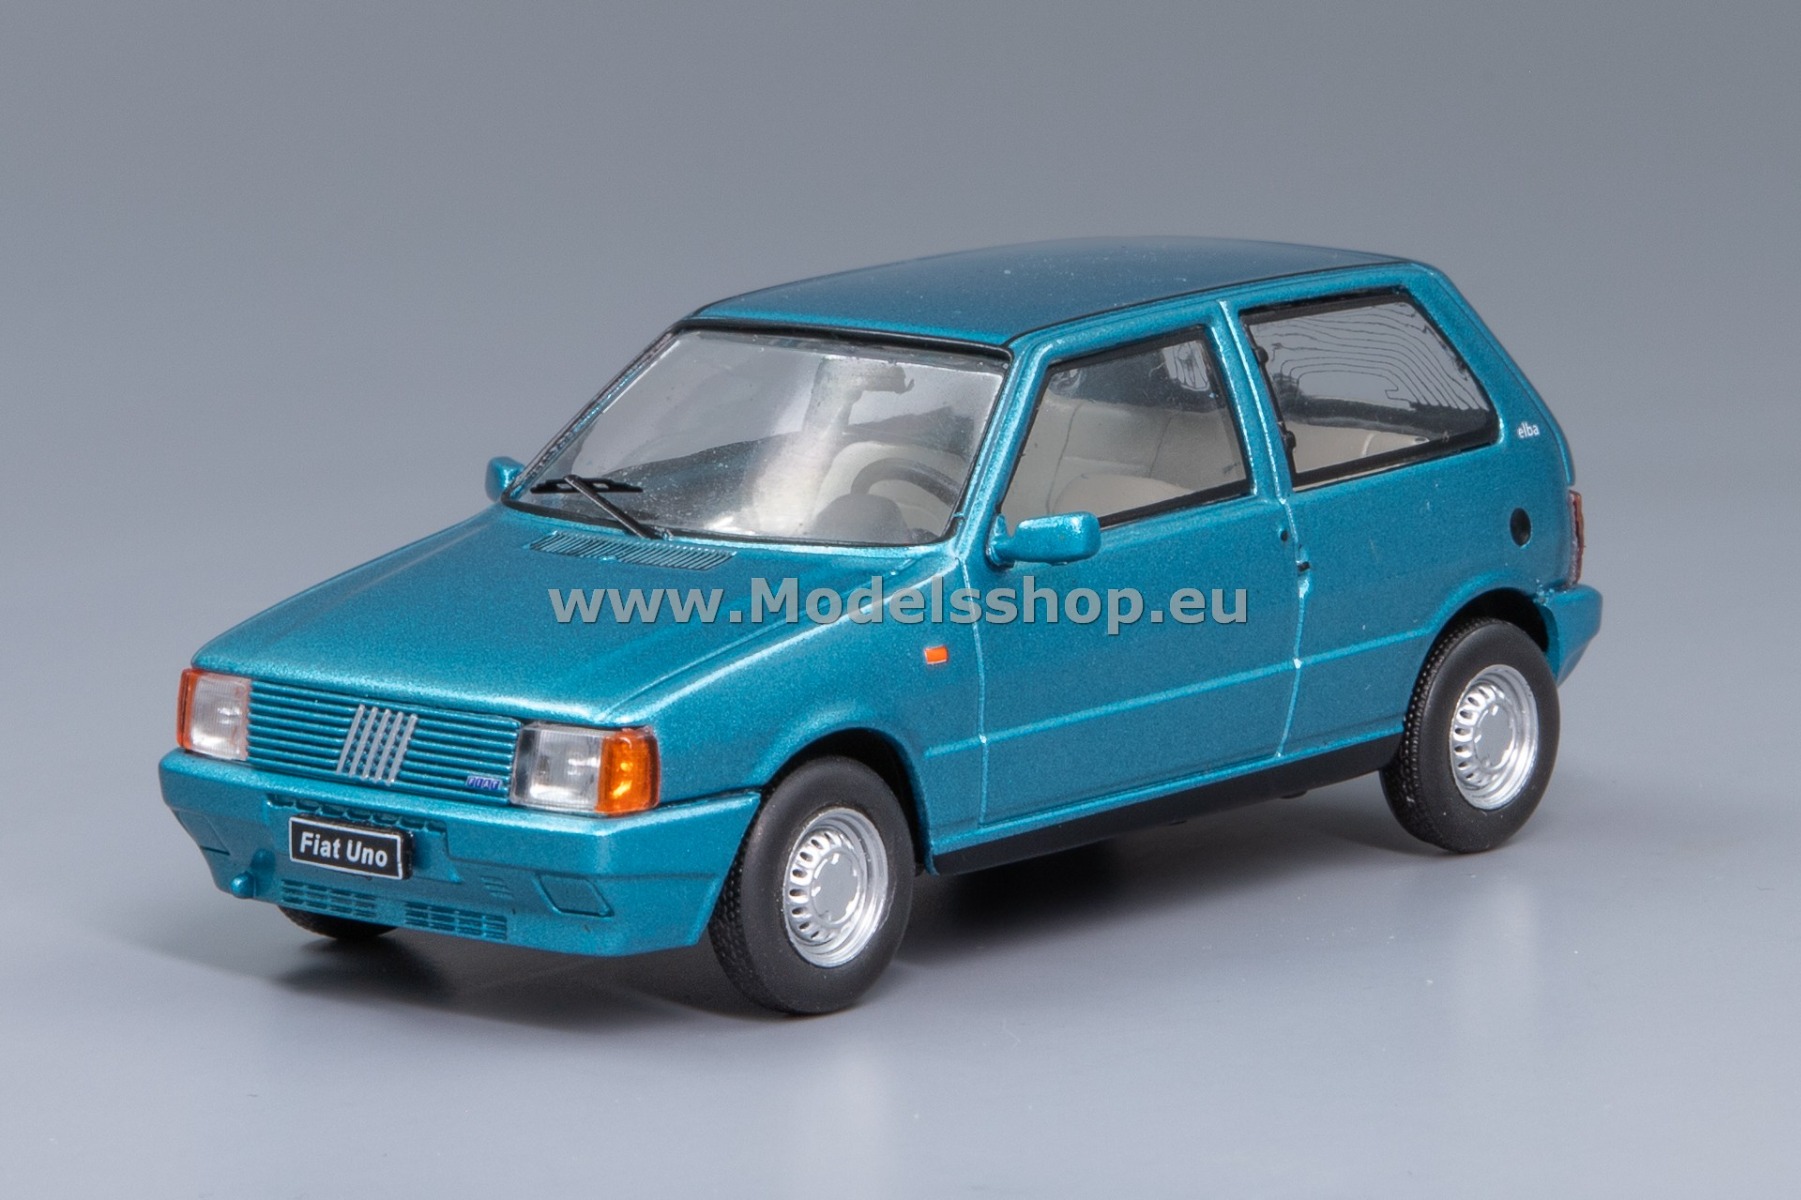 IXO CLC524N.22 Fiat Uno Elba, 1983 /blue - metallic/